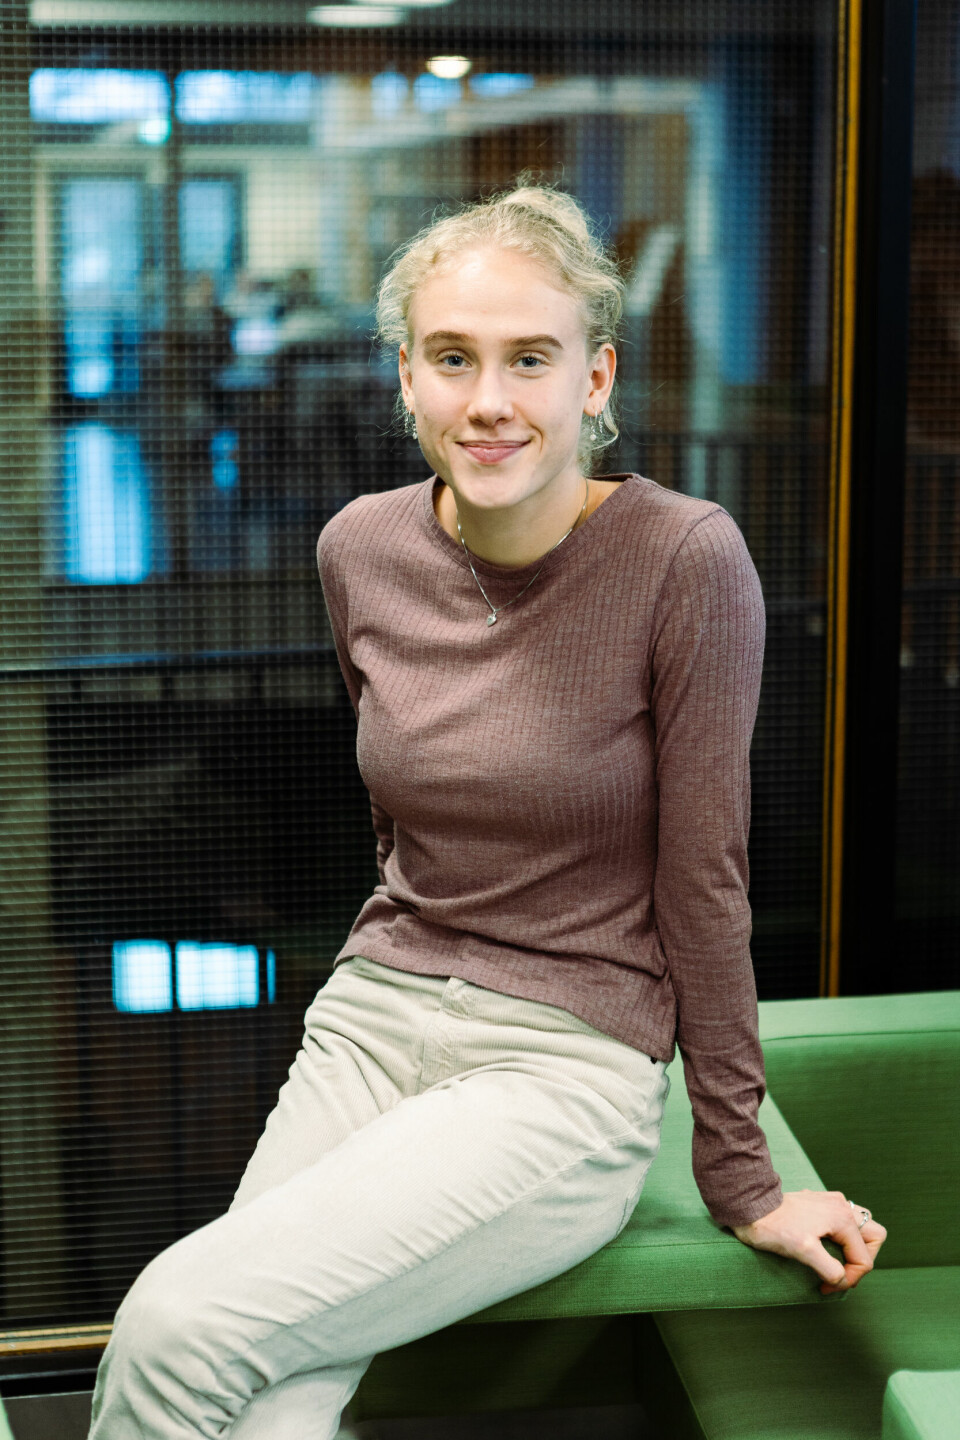 Løsningsorientert: Julianne Jordhøy (22) foreslår flerdagers eksamen for dem som blir plaget av syklusen under skoleeksamen